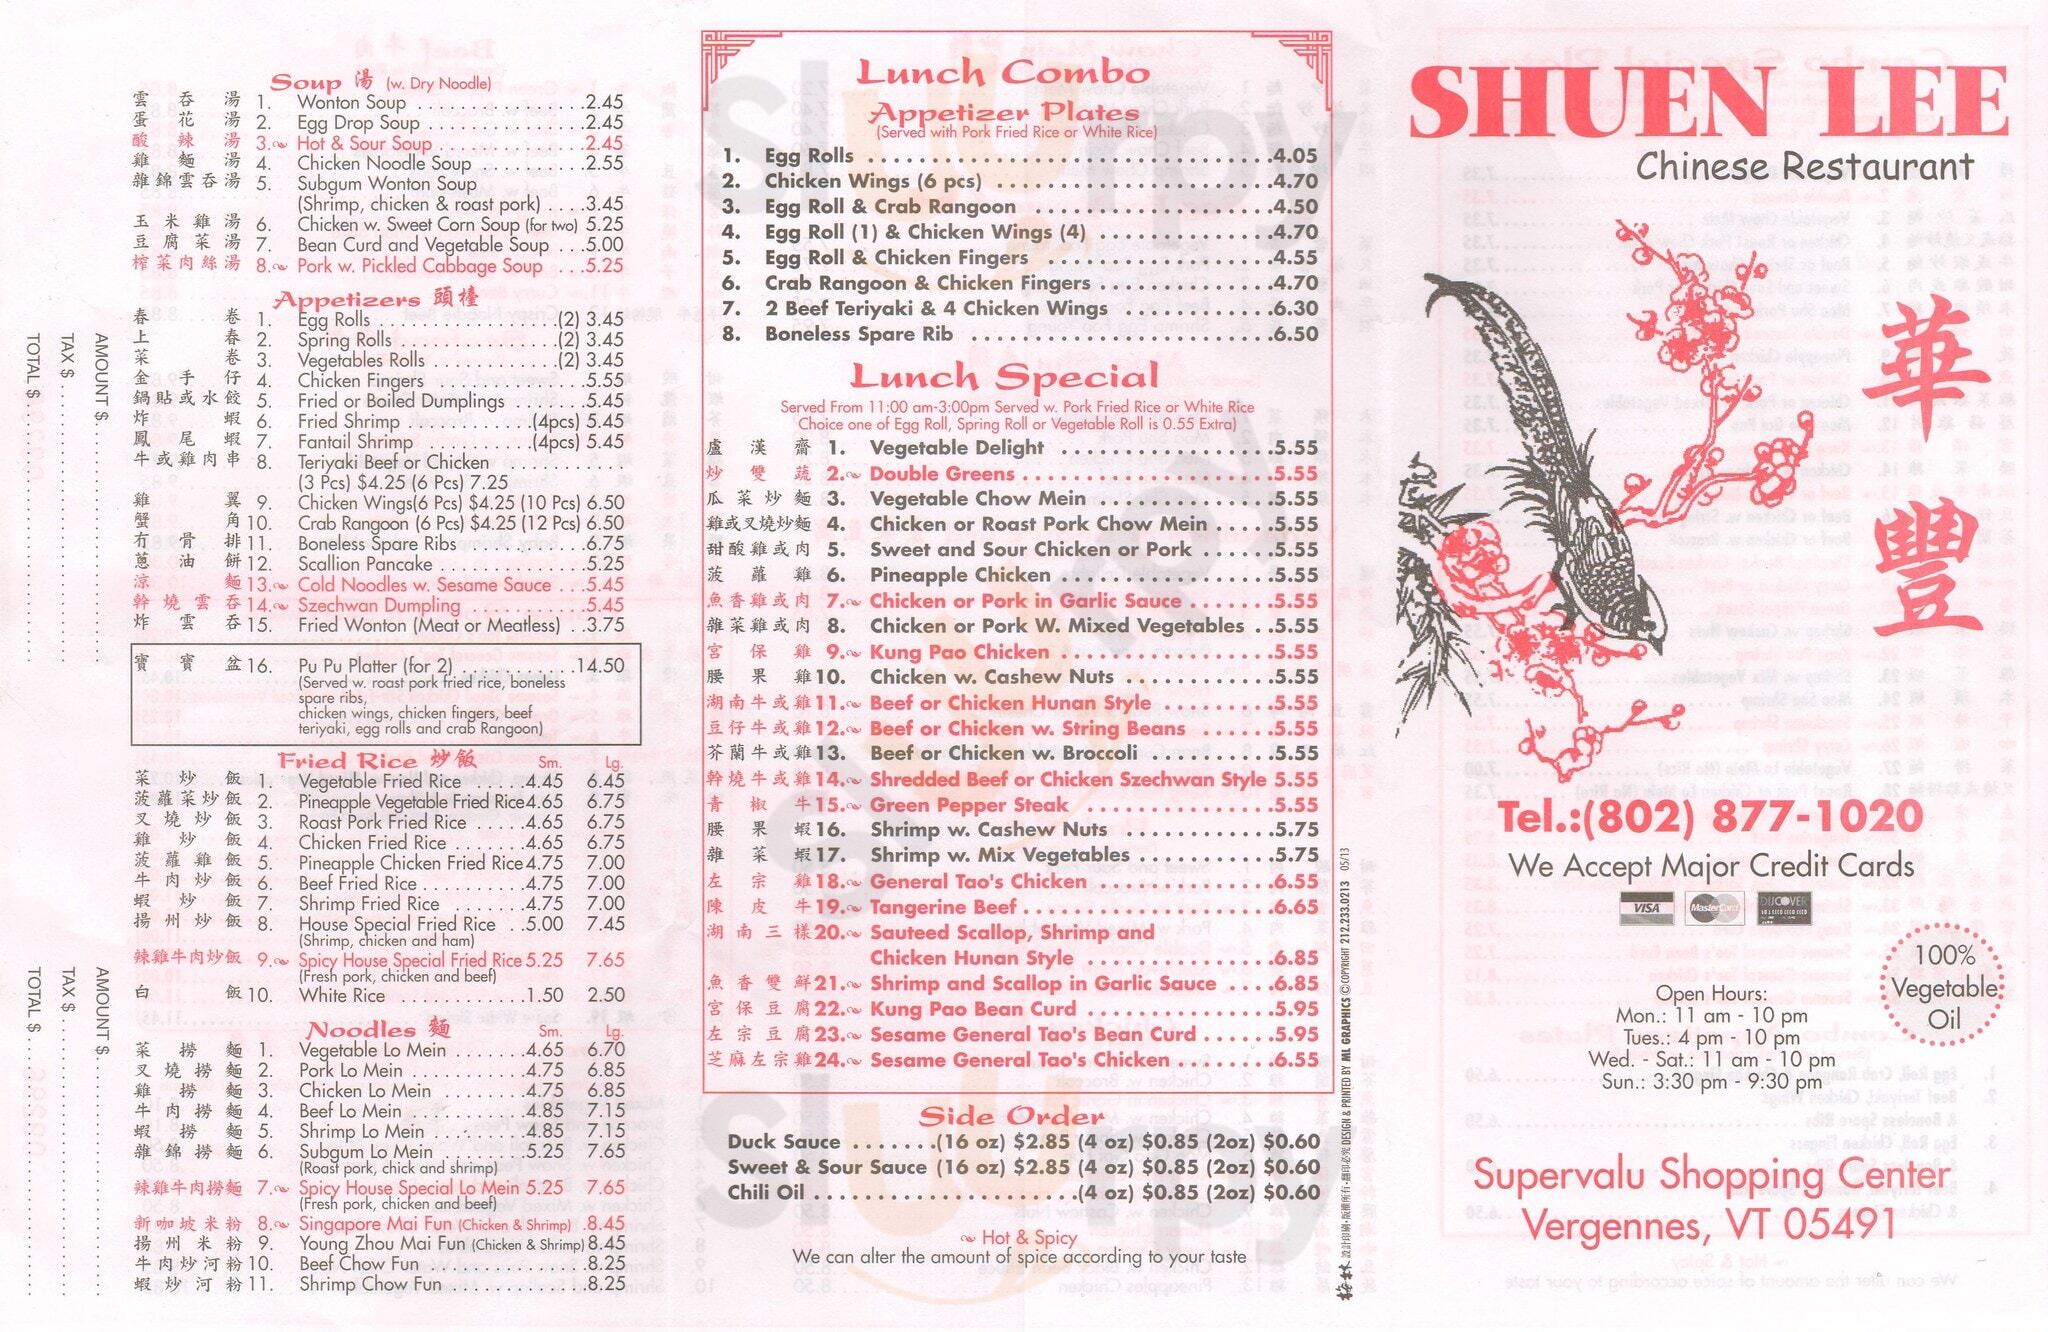 Shuen Lee Chinese Restaurant Vergennes Menu - 1